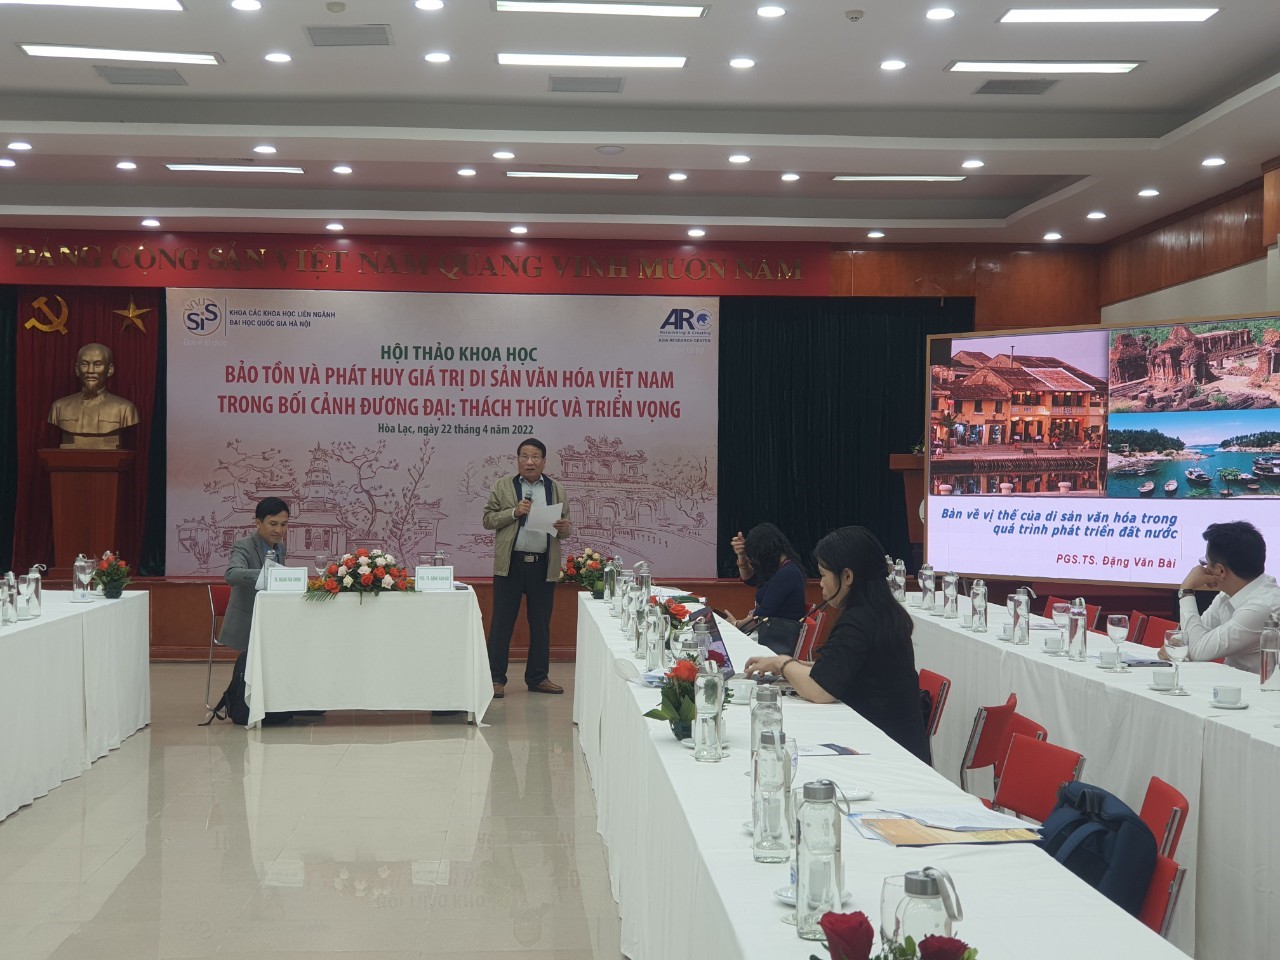 Hội thảo “Bảo tồn và phát huy giá trị di sản văn hóa Việt Nam trong bối cảnh đương đại: thách thức và triển vọng”